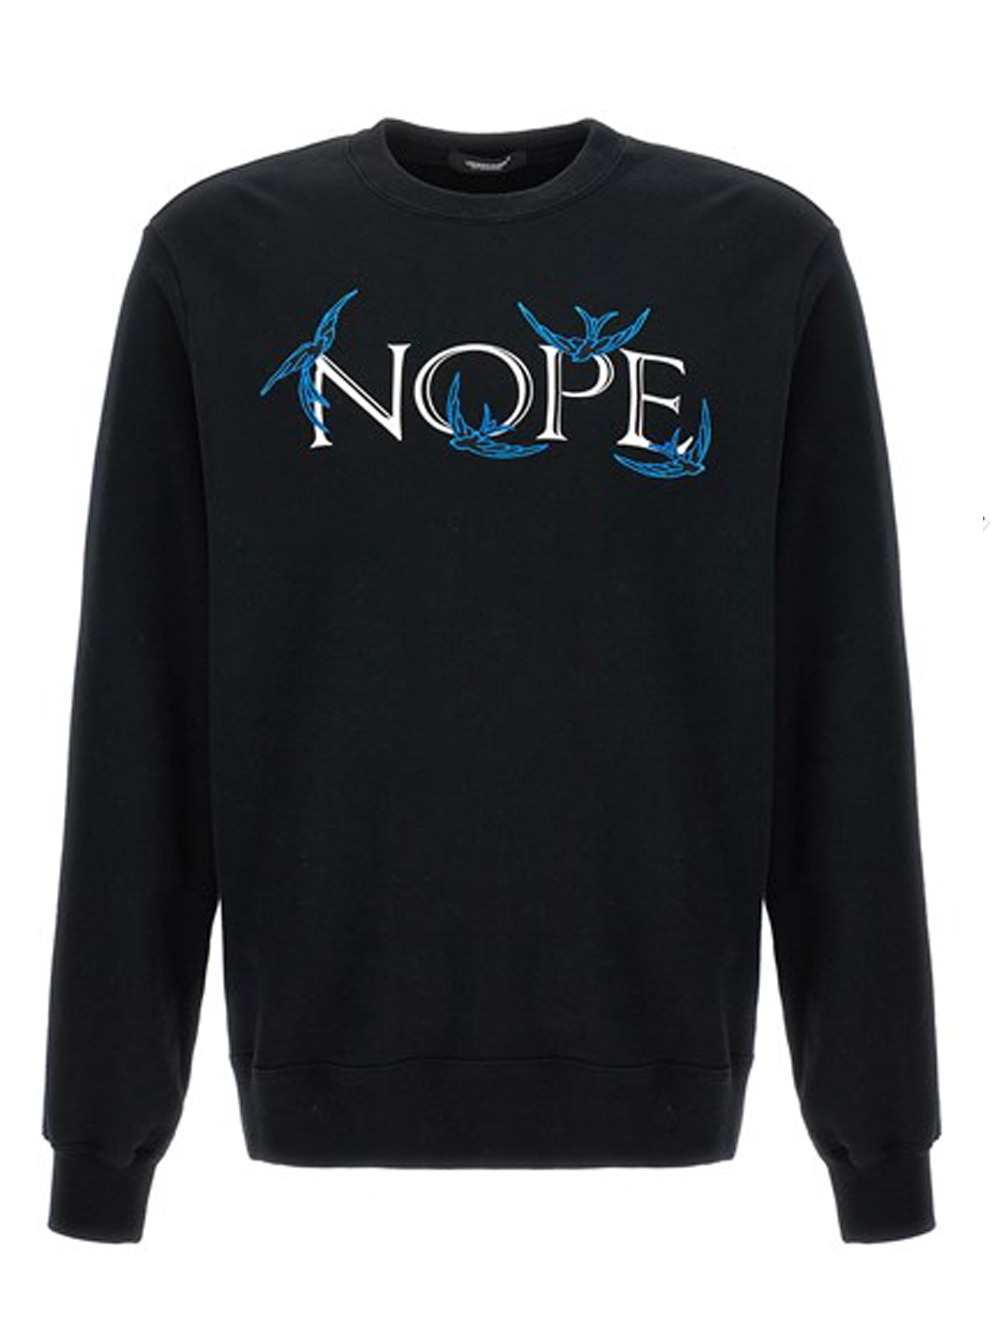 Undercover UNDERCOVER- 'nope' Printed Sweatshirt